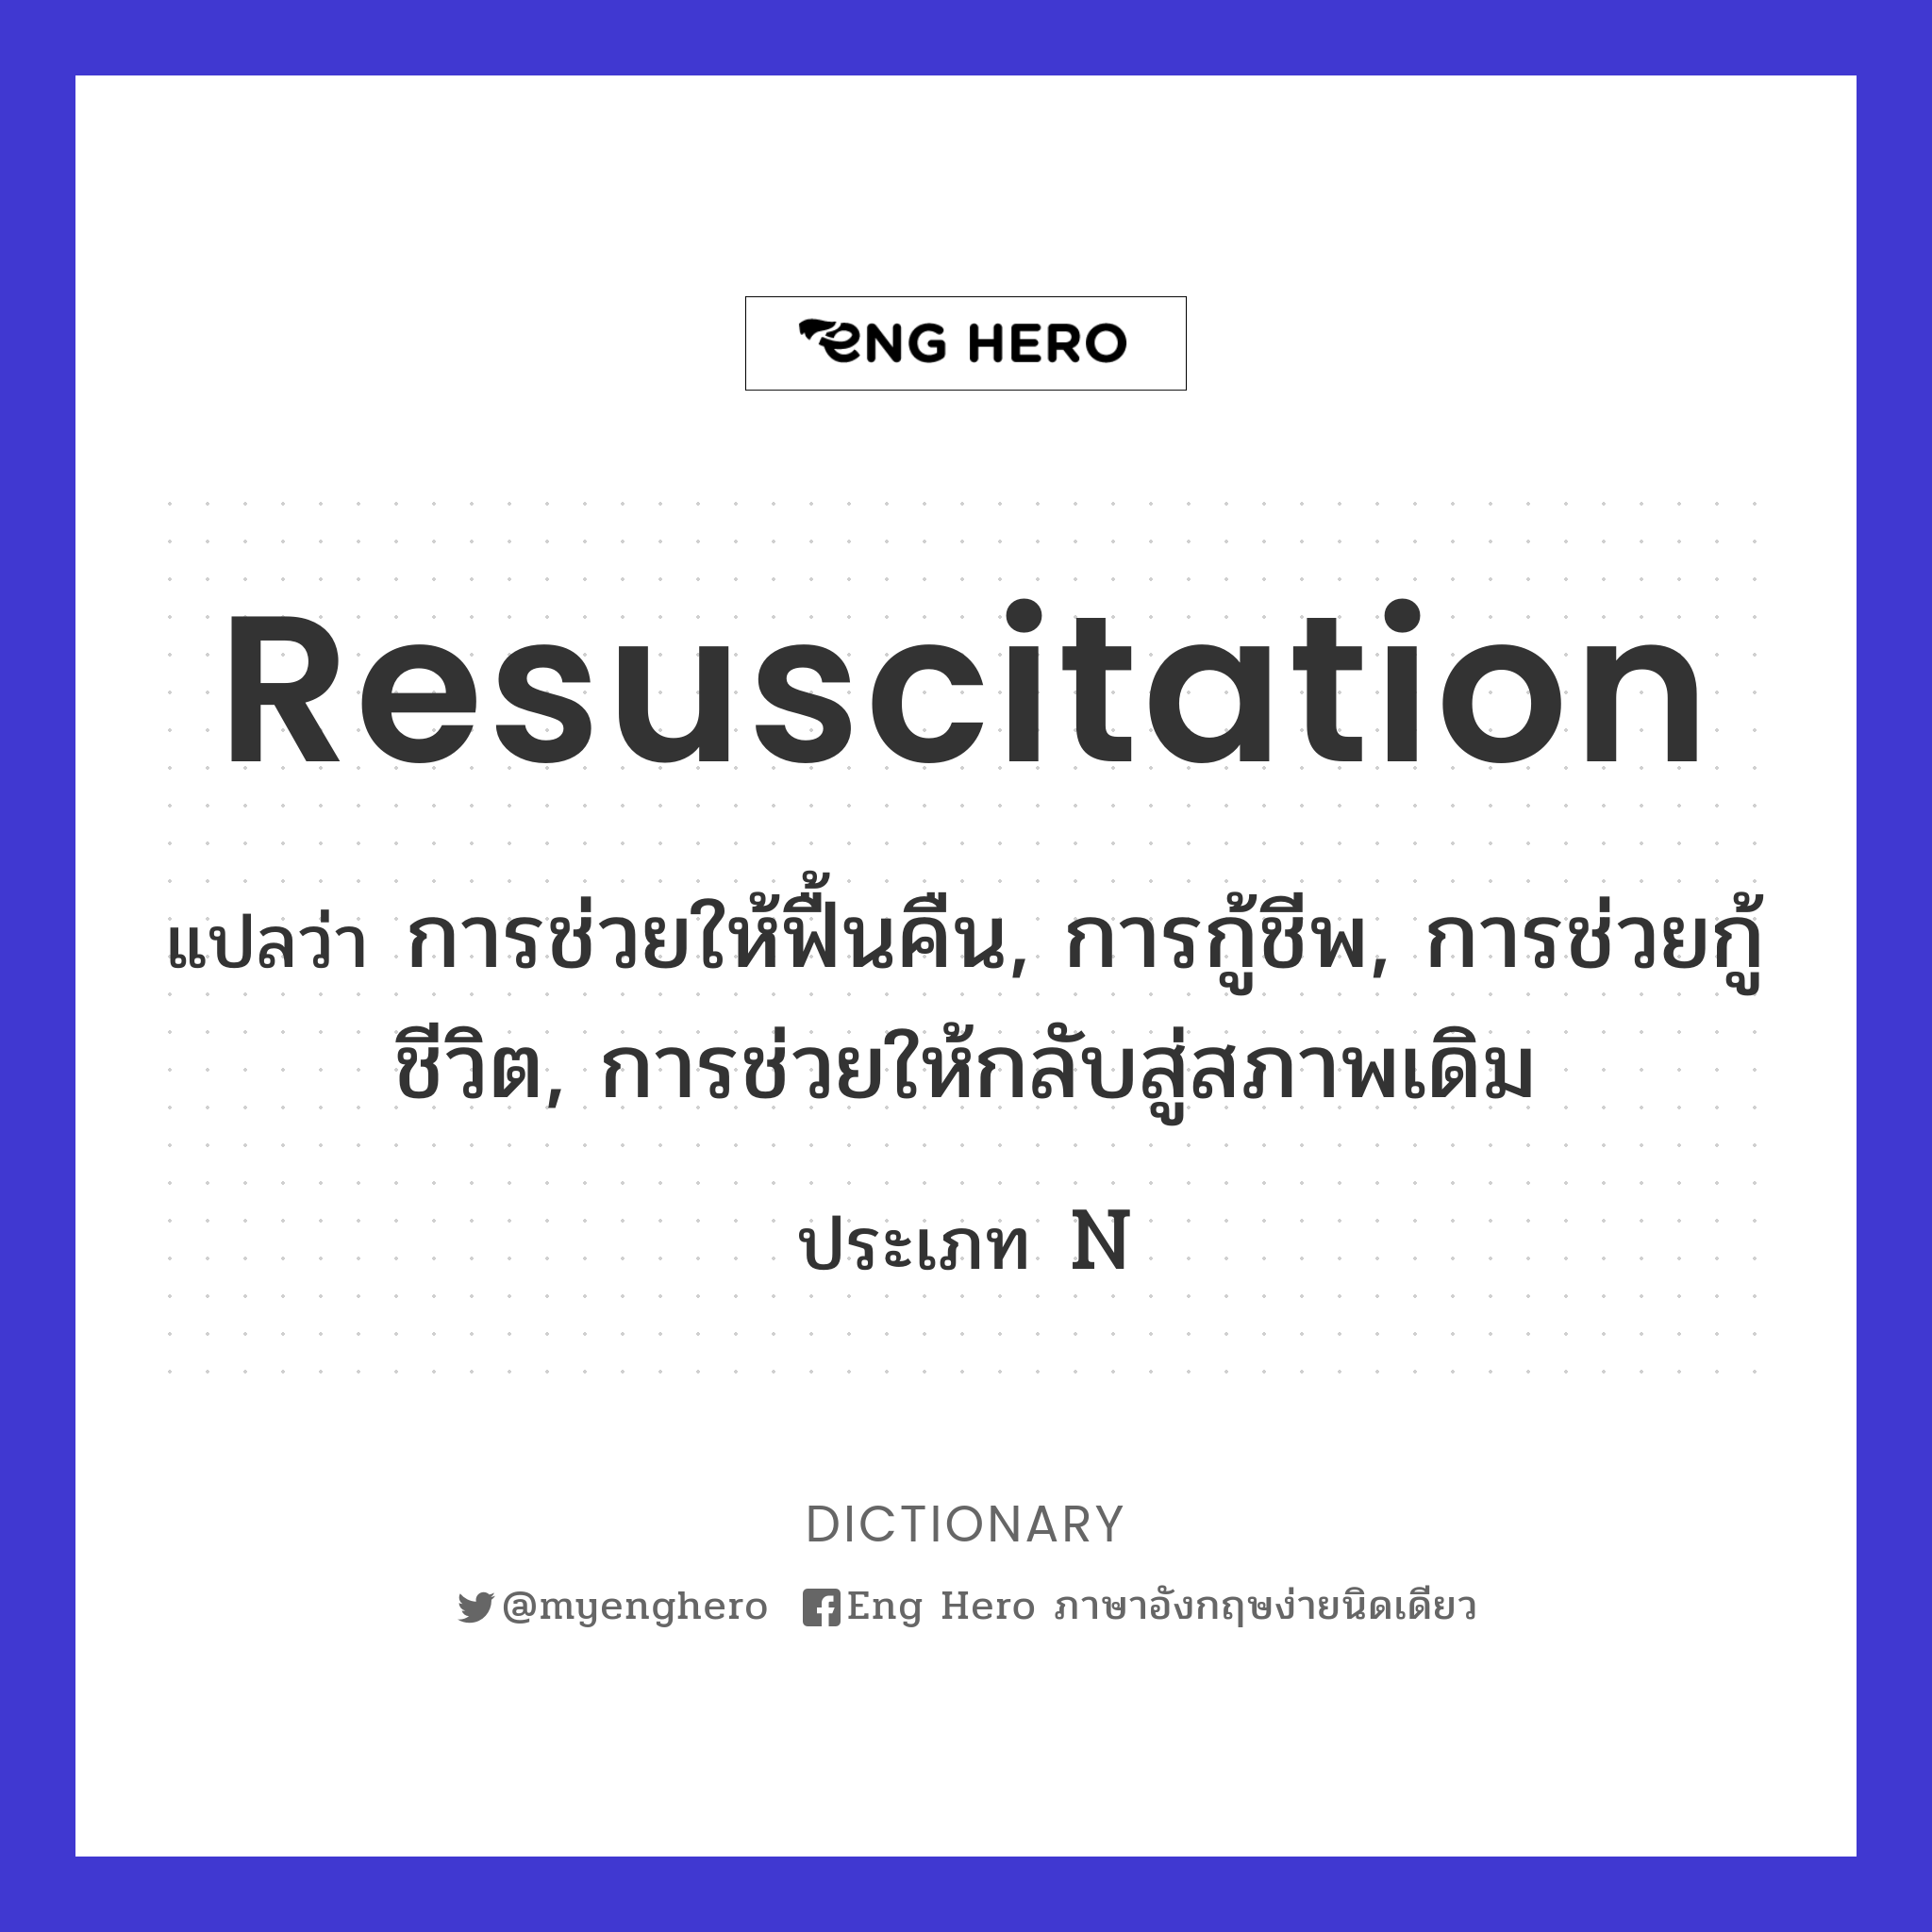 resuscitation